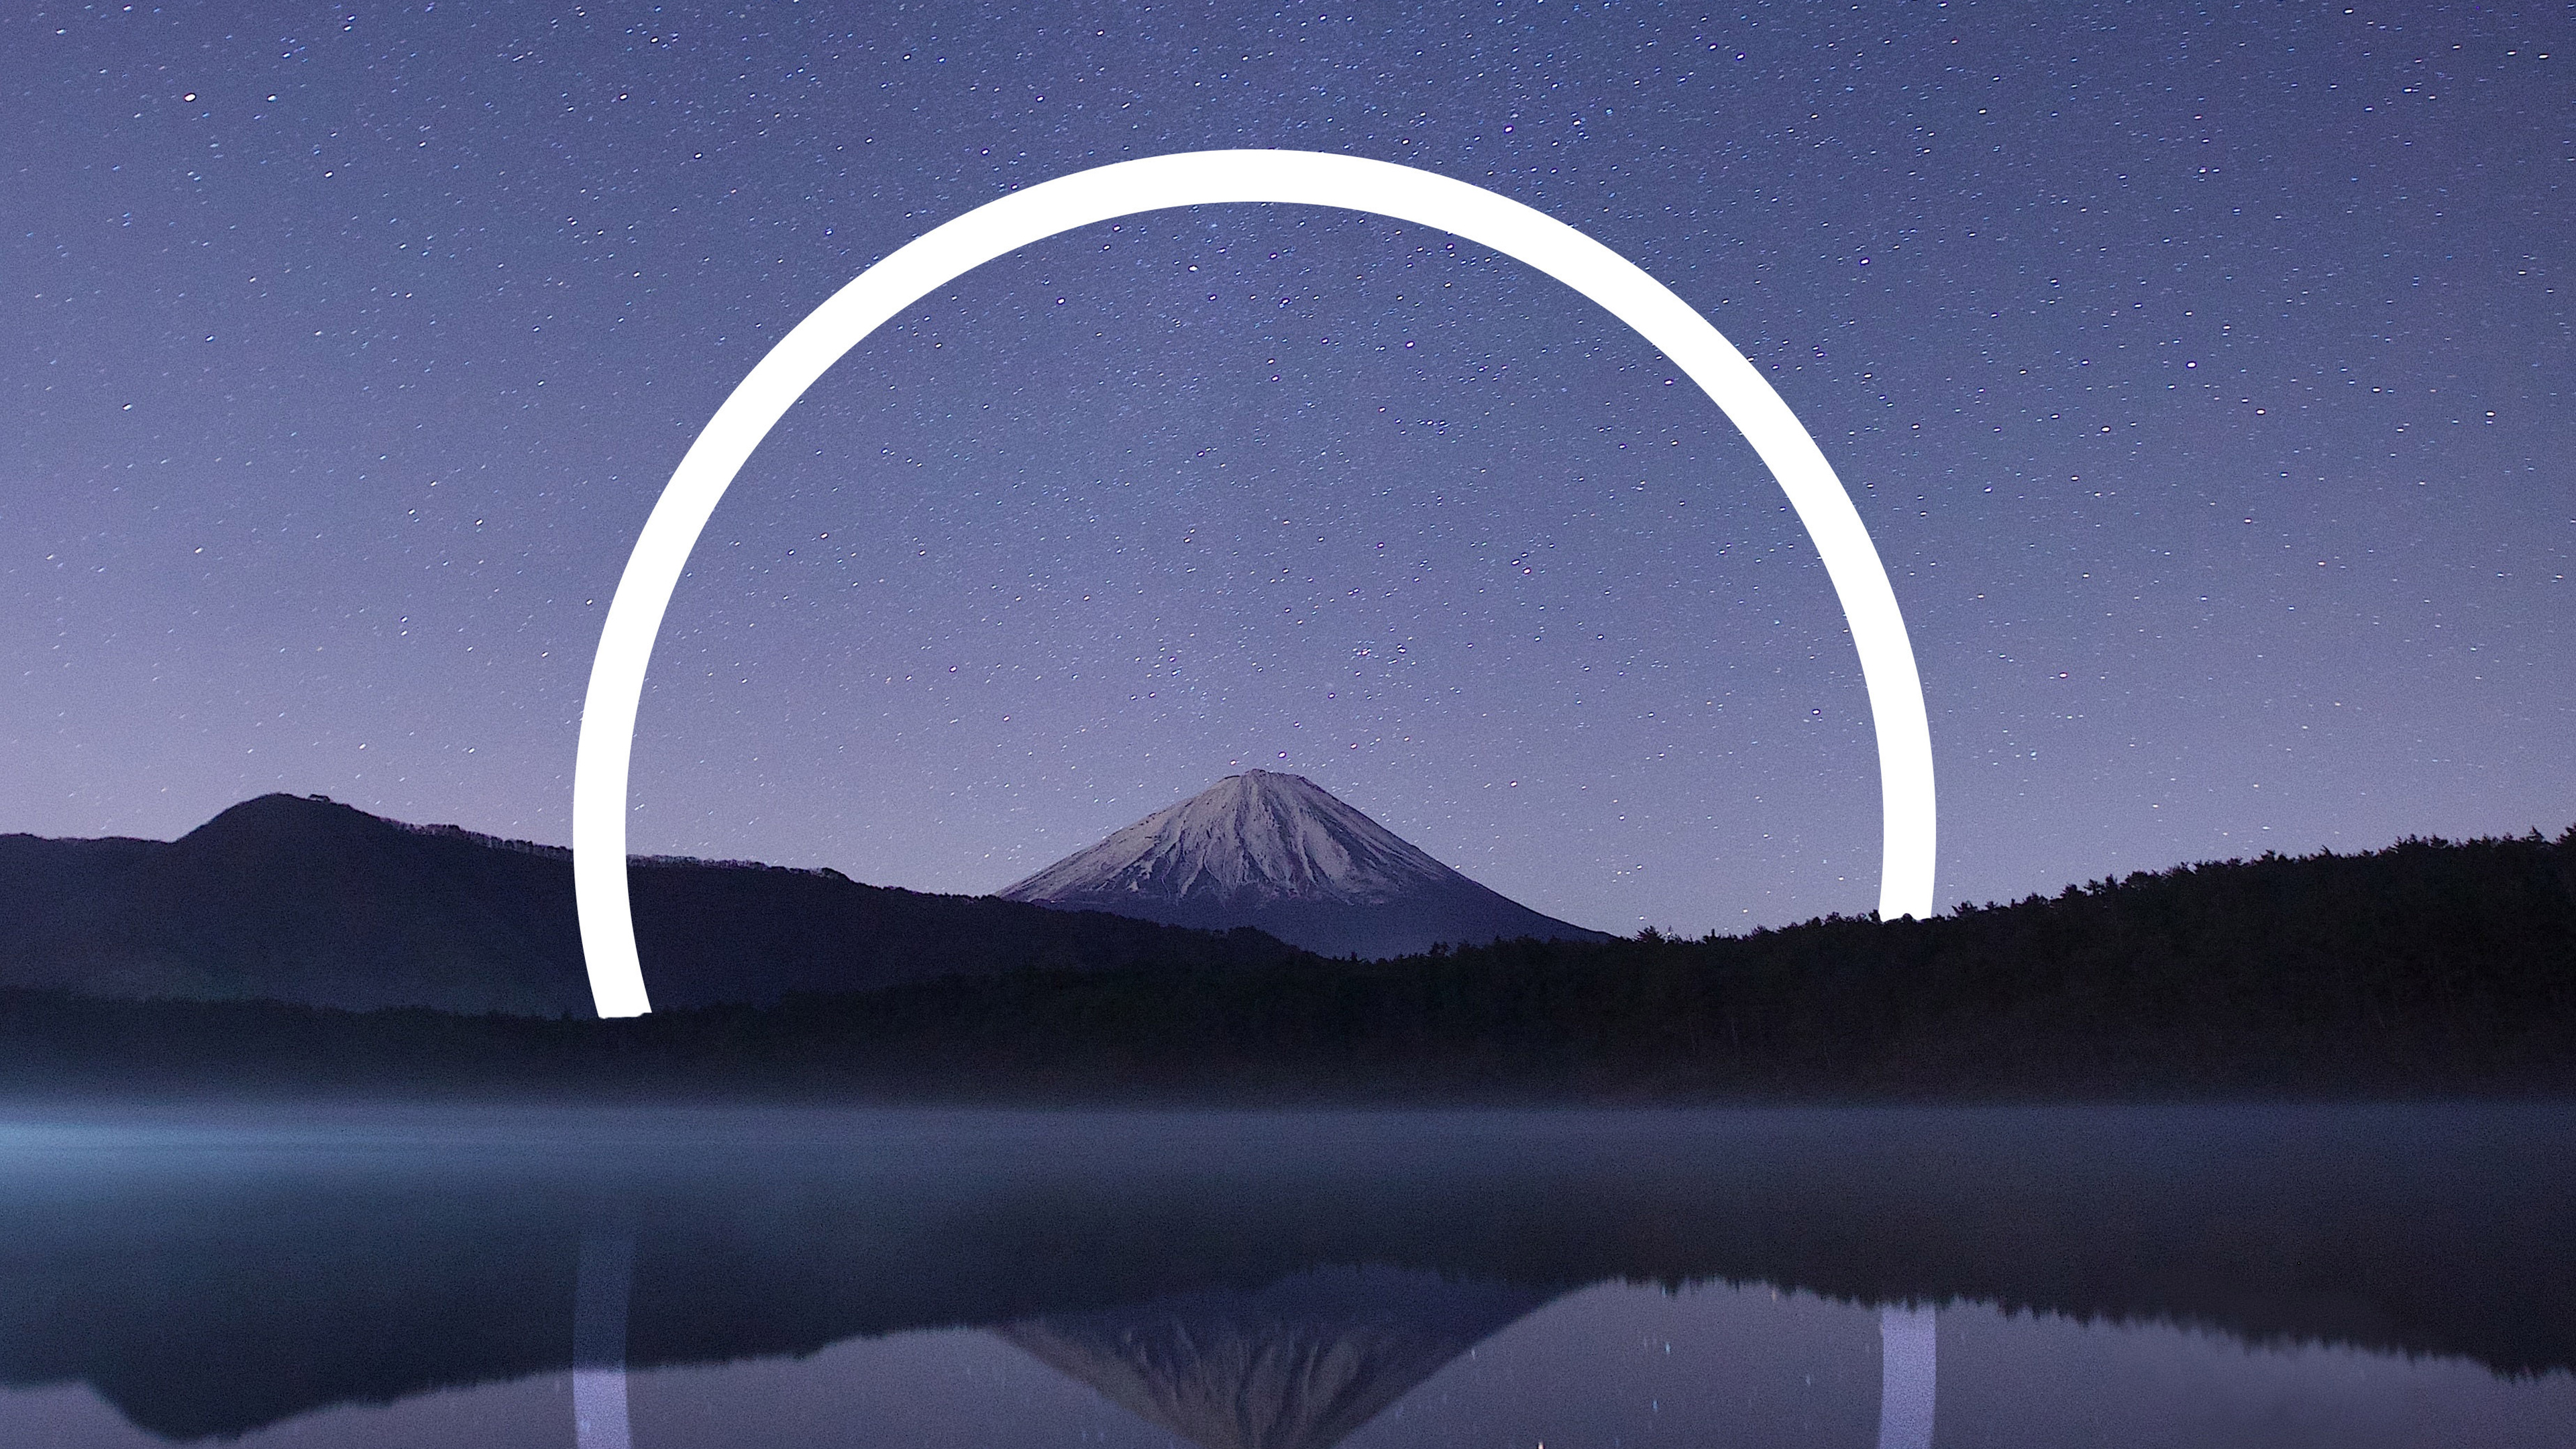 Mount Fuji Geometric Landscape 4K Wallpapers